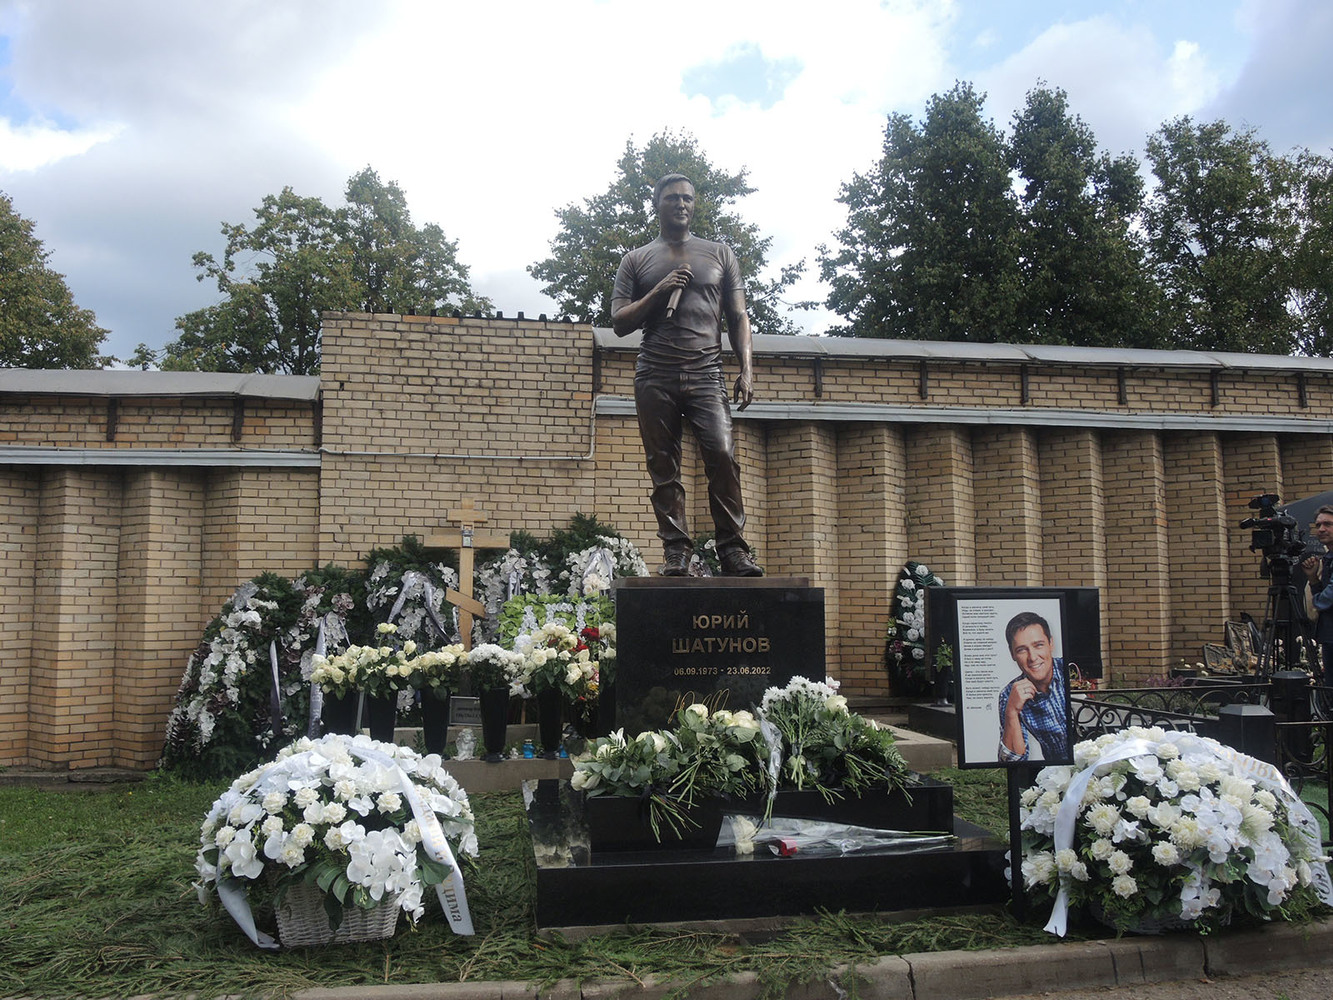 Памятник шатунова где